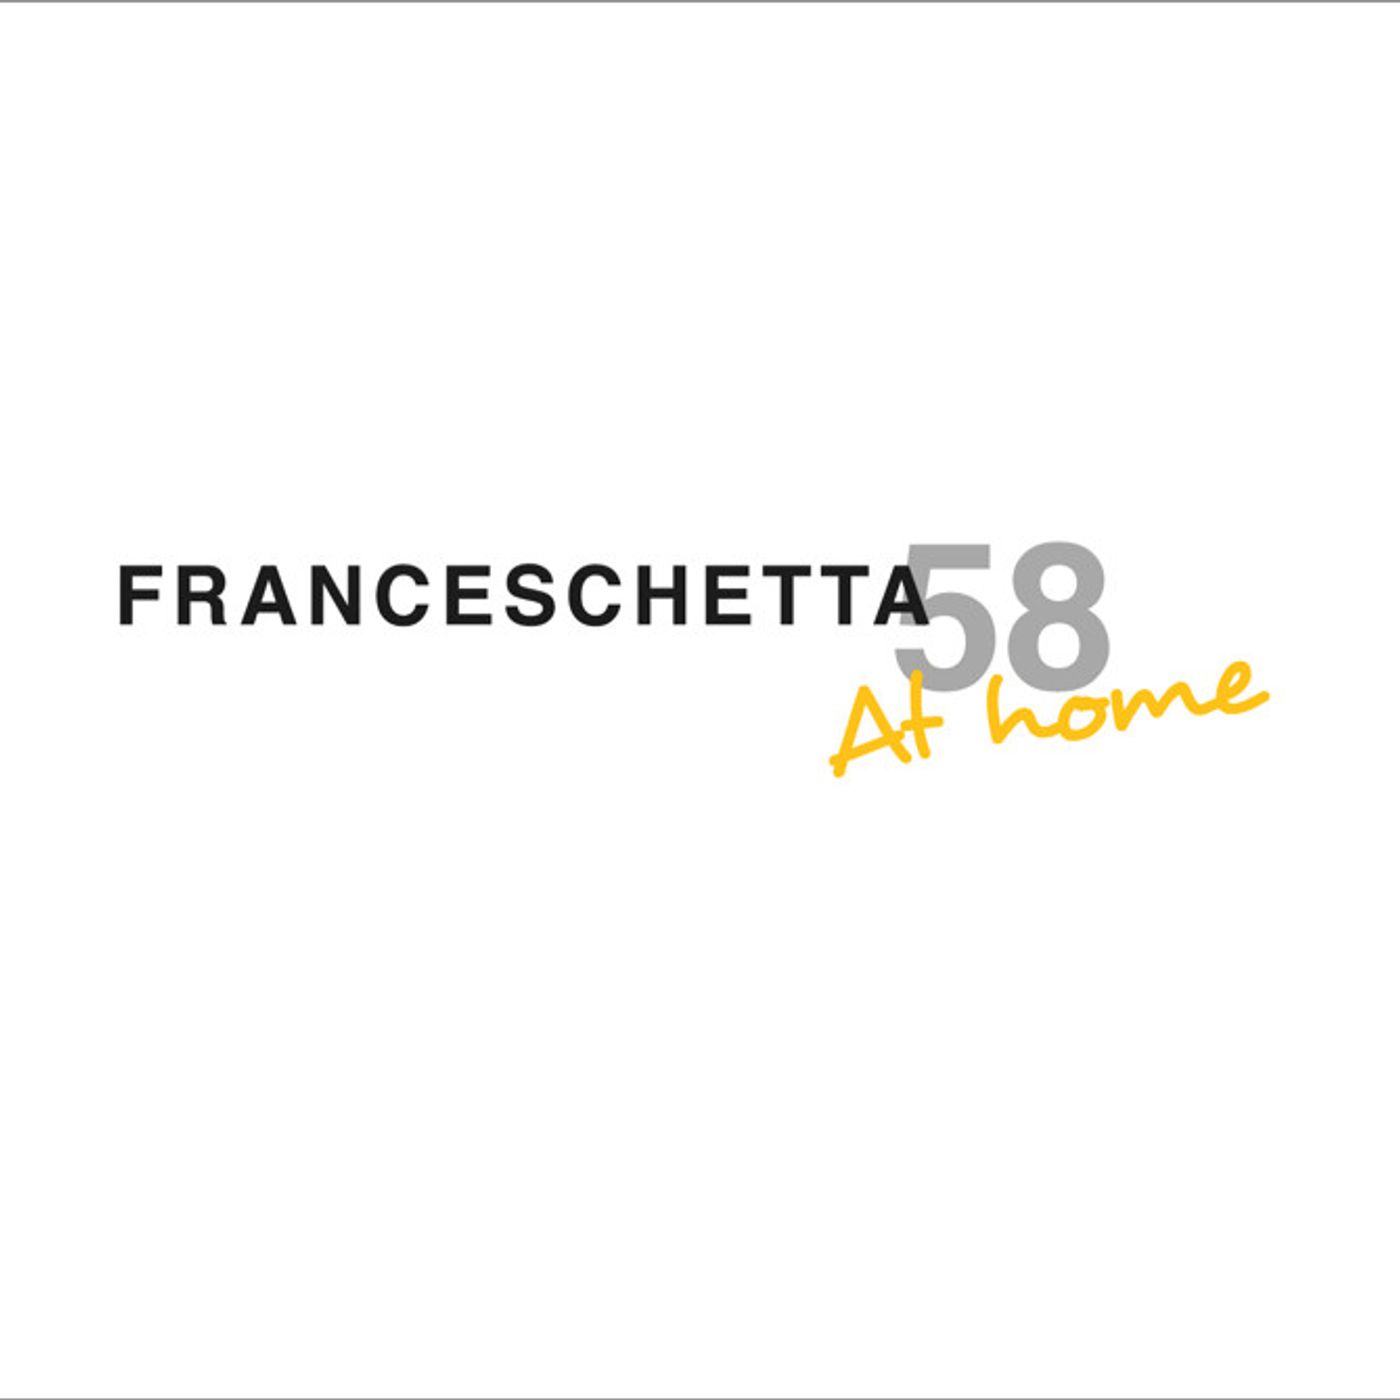 Franceschetta At Home